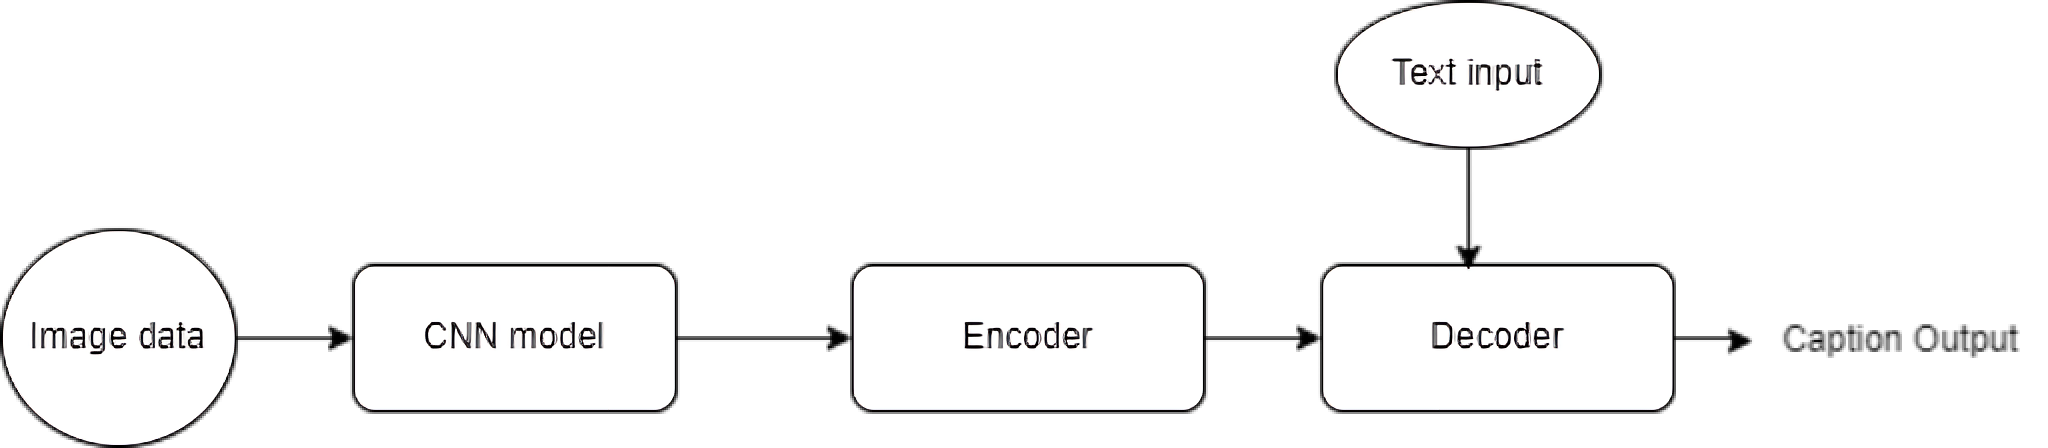 Compressed Image Captioning using CNN-based Encoder-Decoder Framework